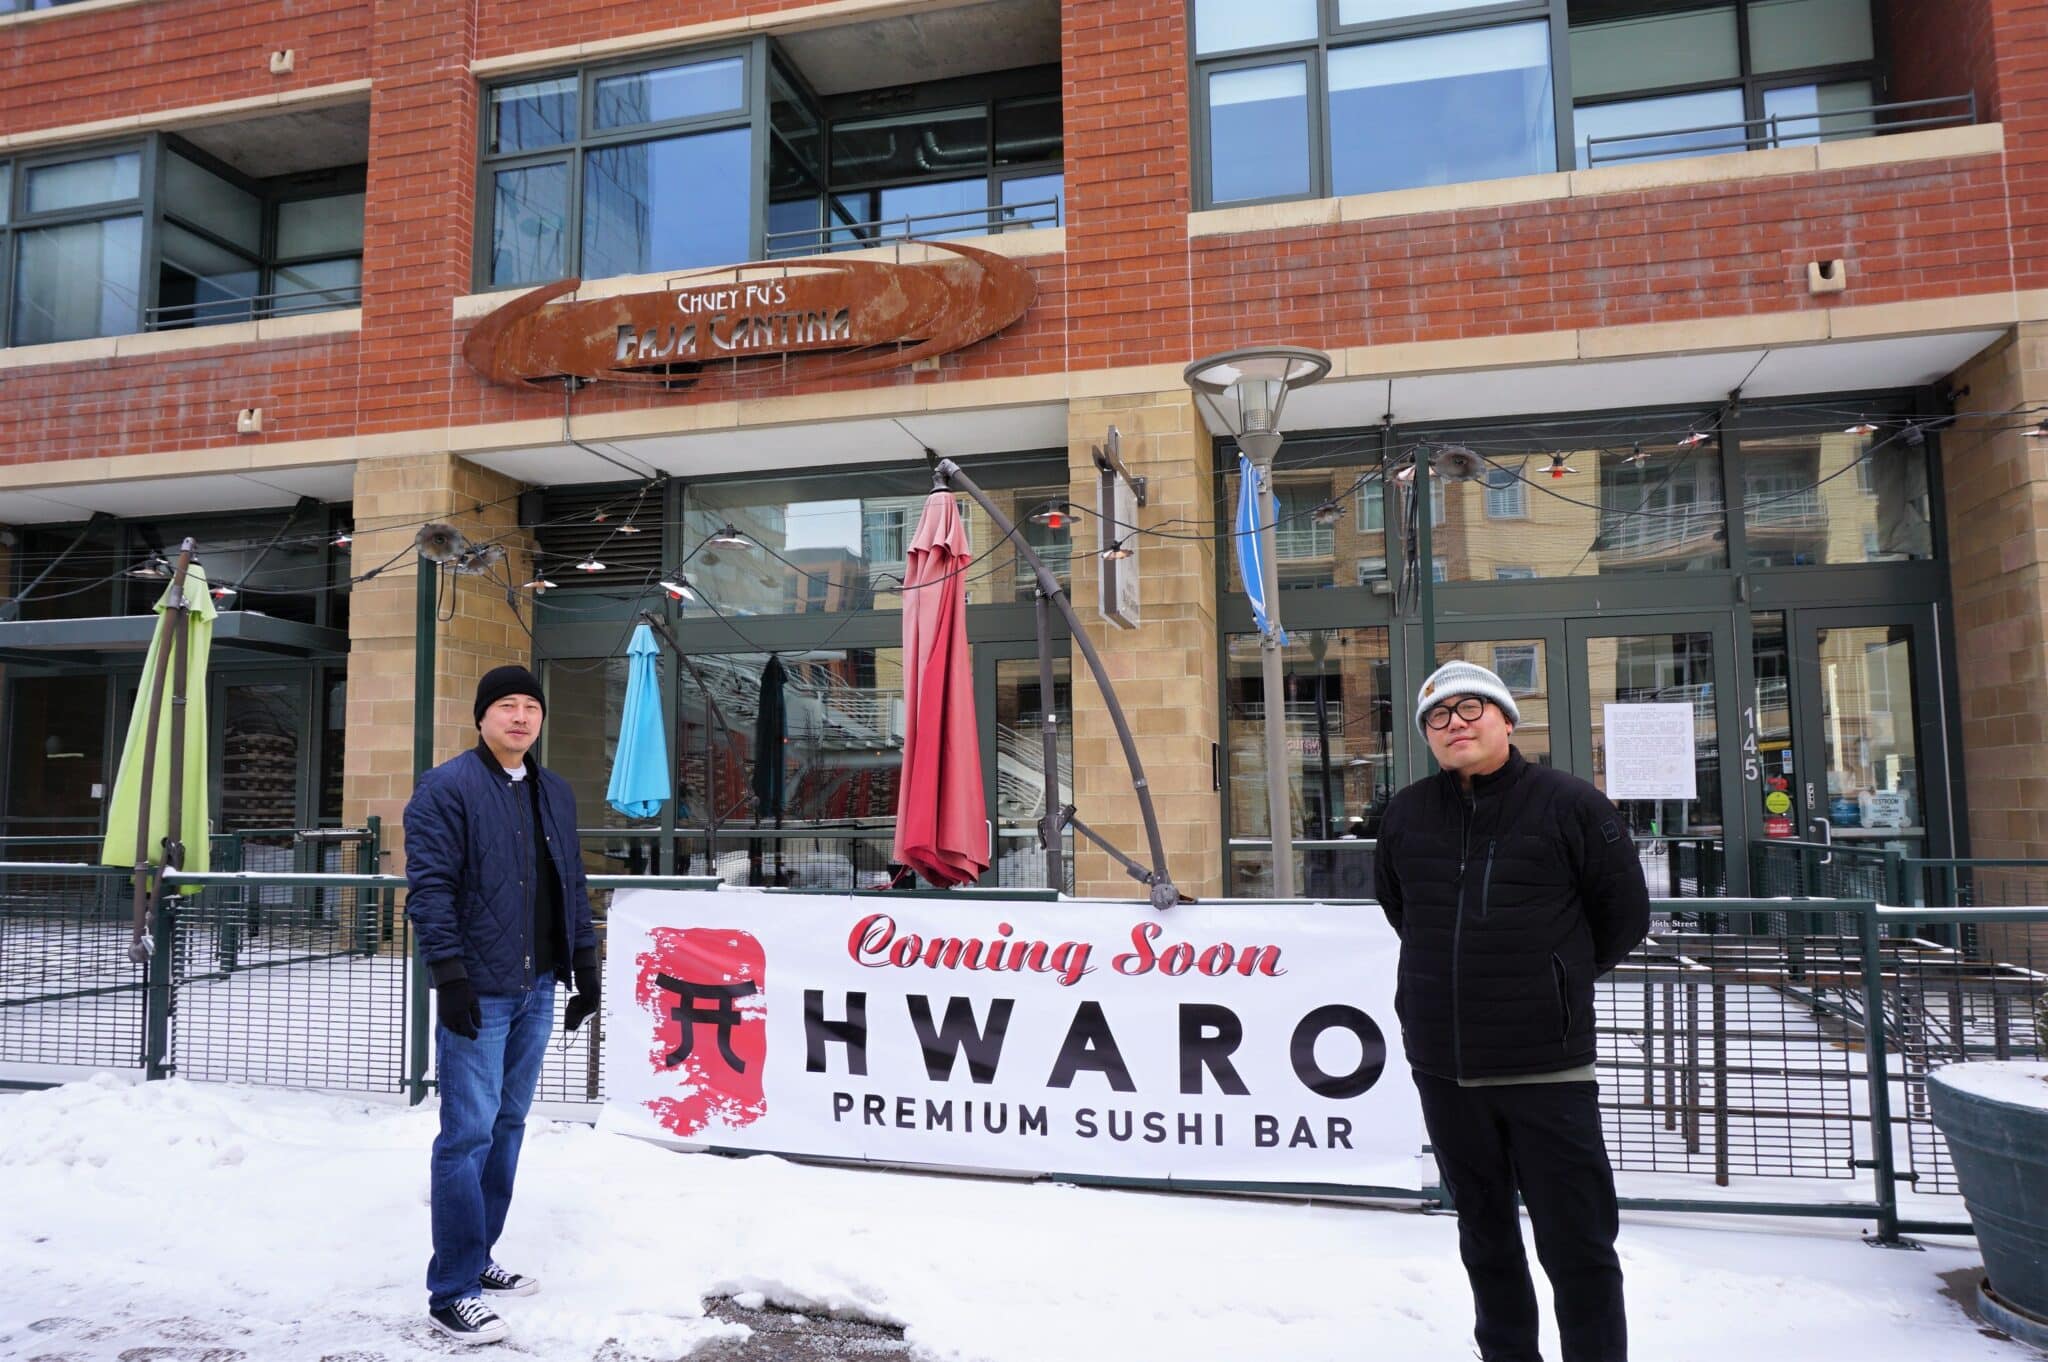 More Korean, sushi restaurants opening in Denver area